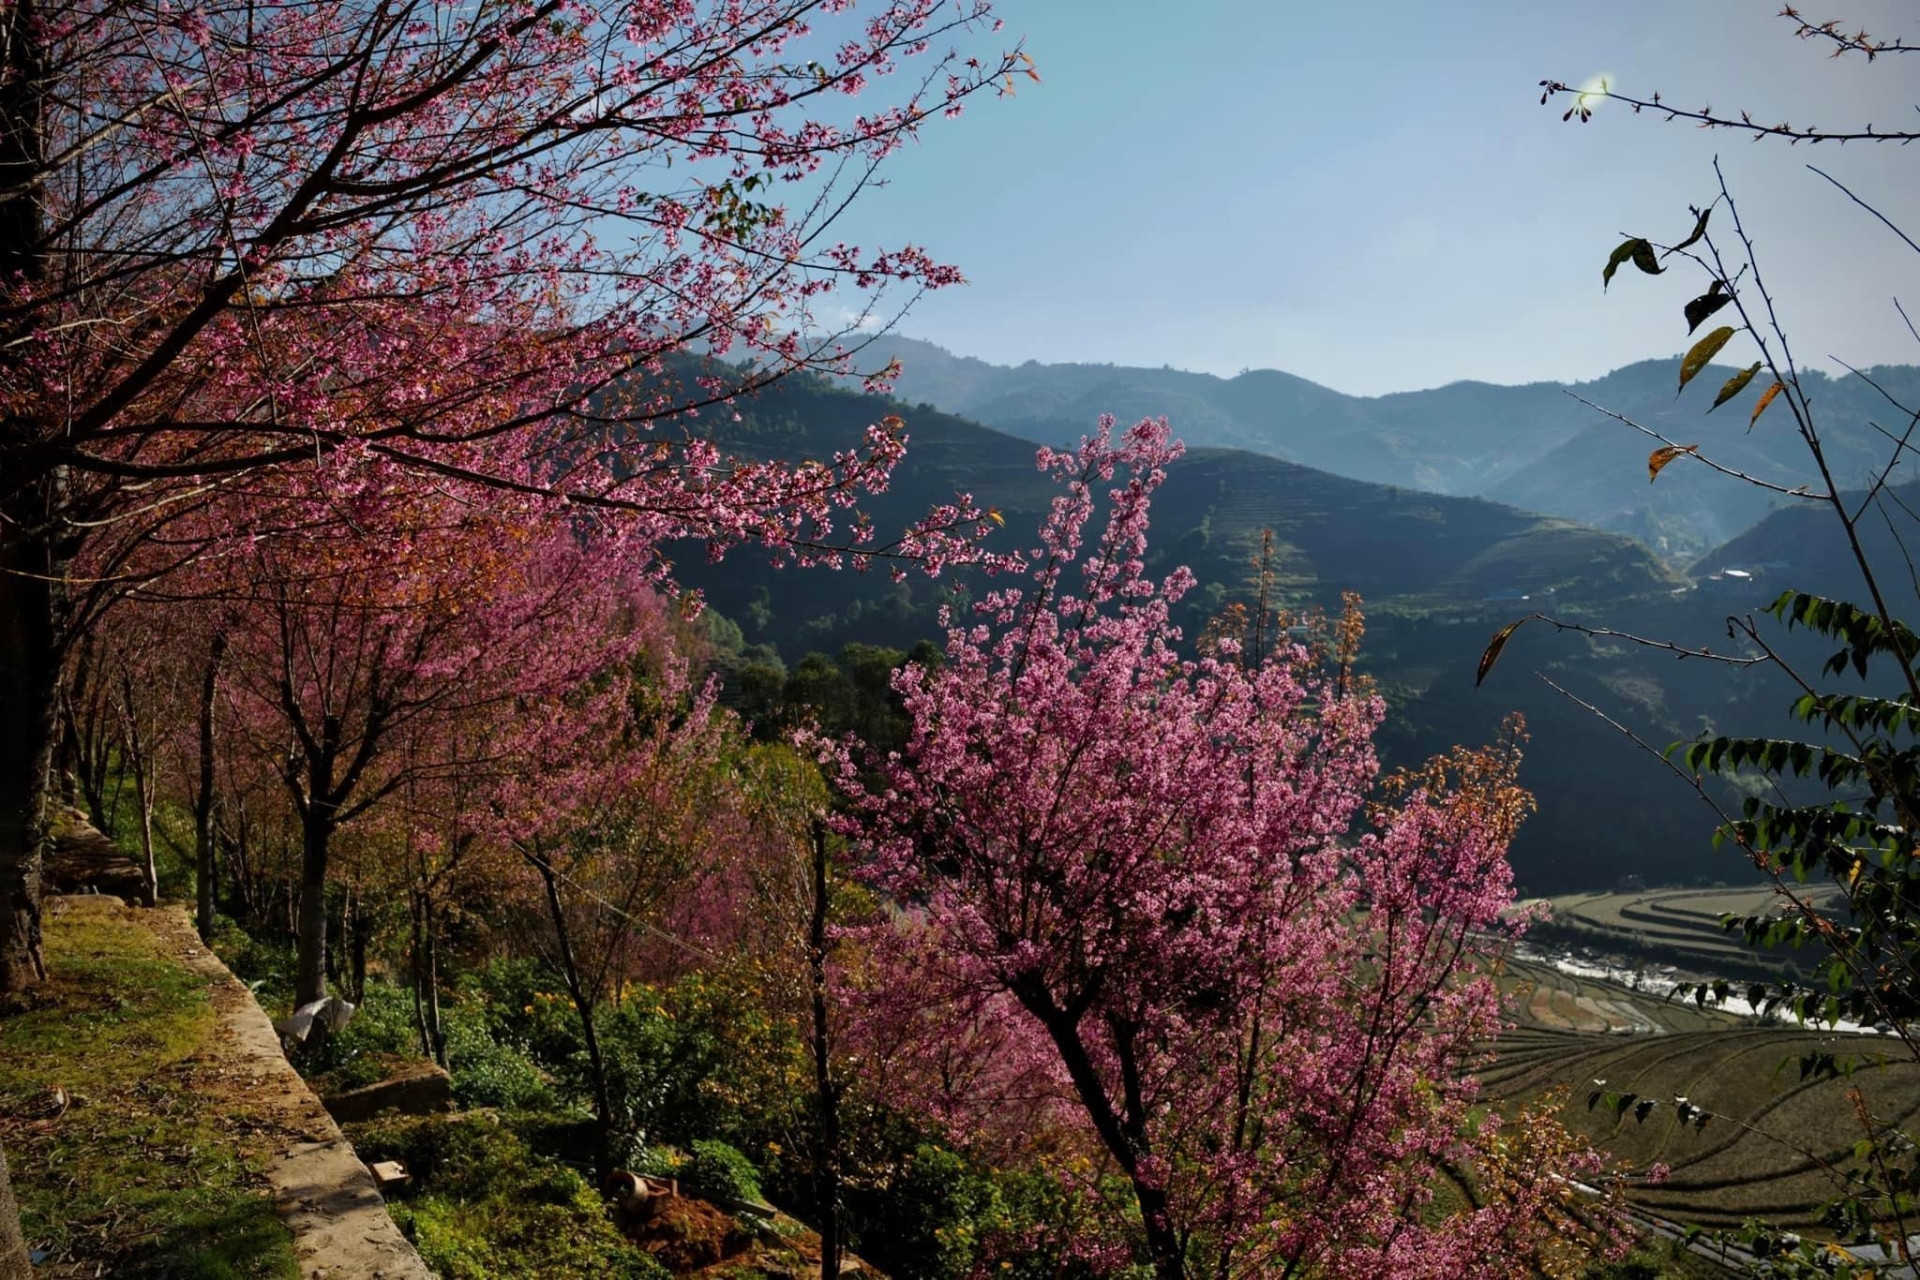 Chiêm ngưỡng sắc hoa tớ dày nhuộm hồng núi rừng Mù Cang Chải - 3